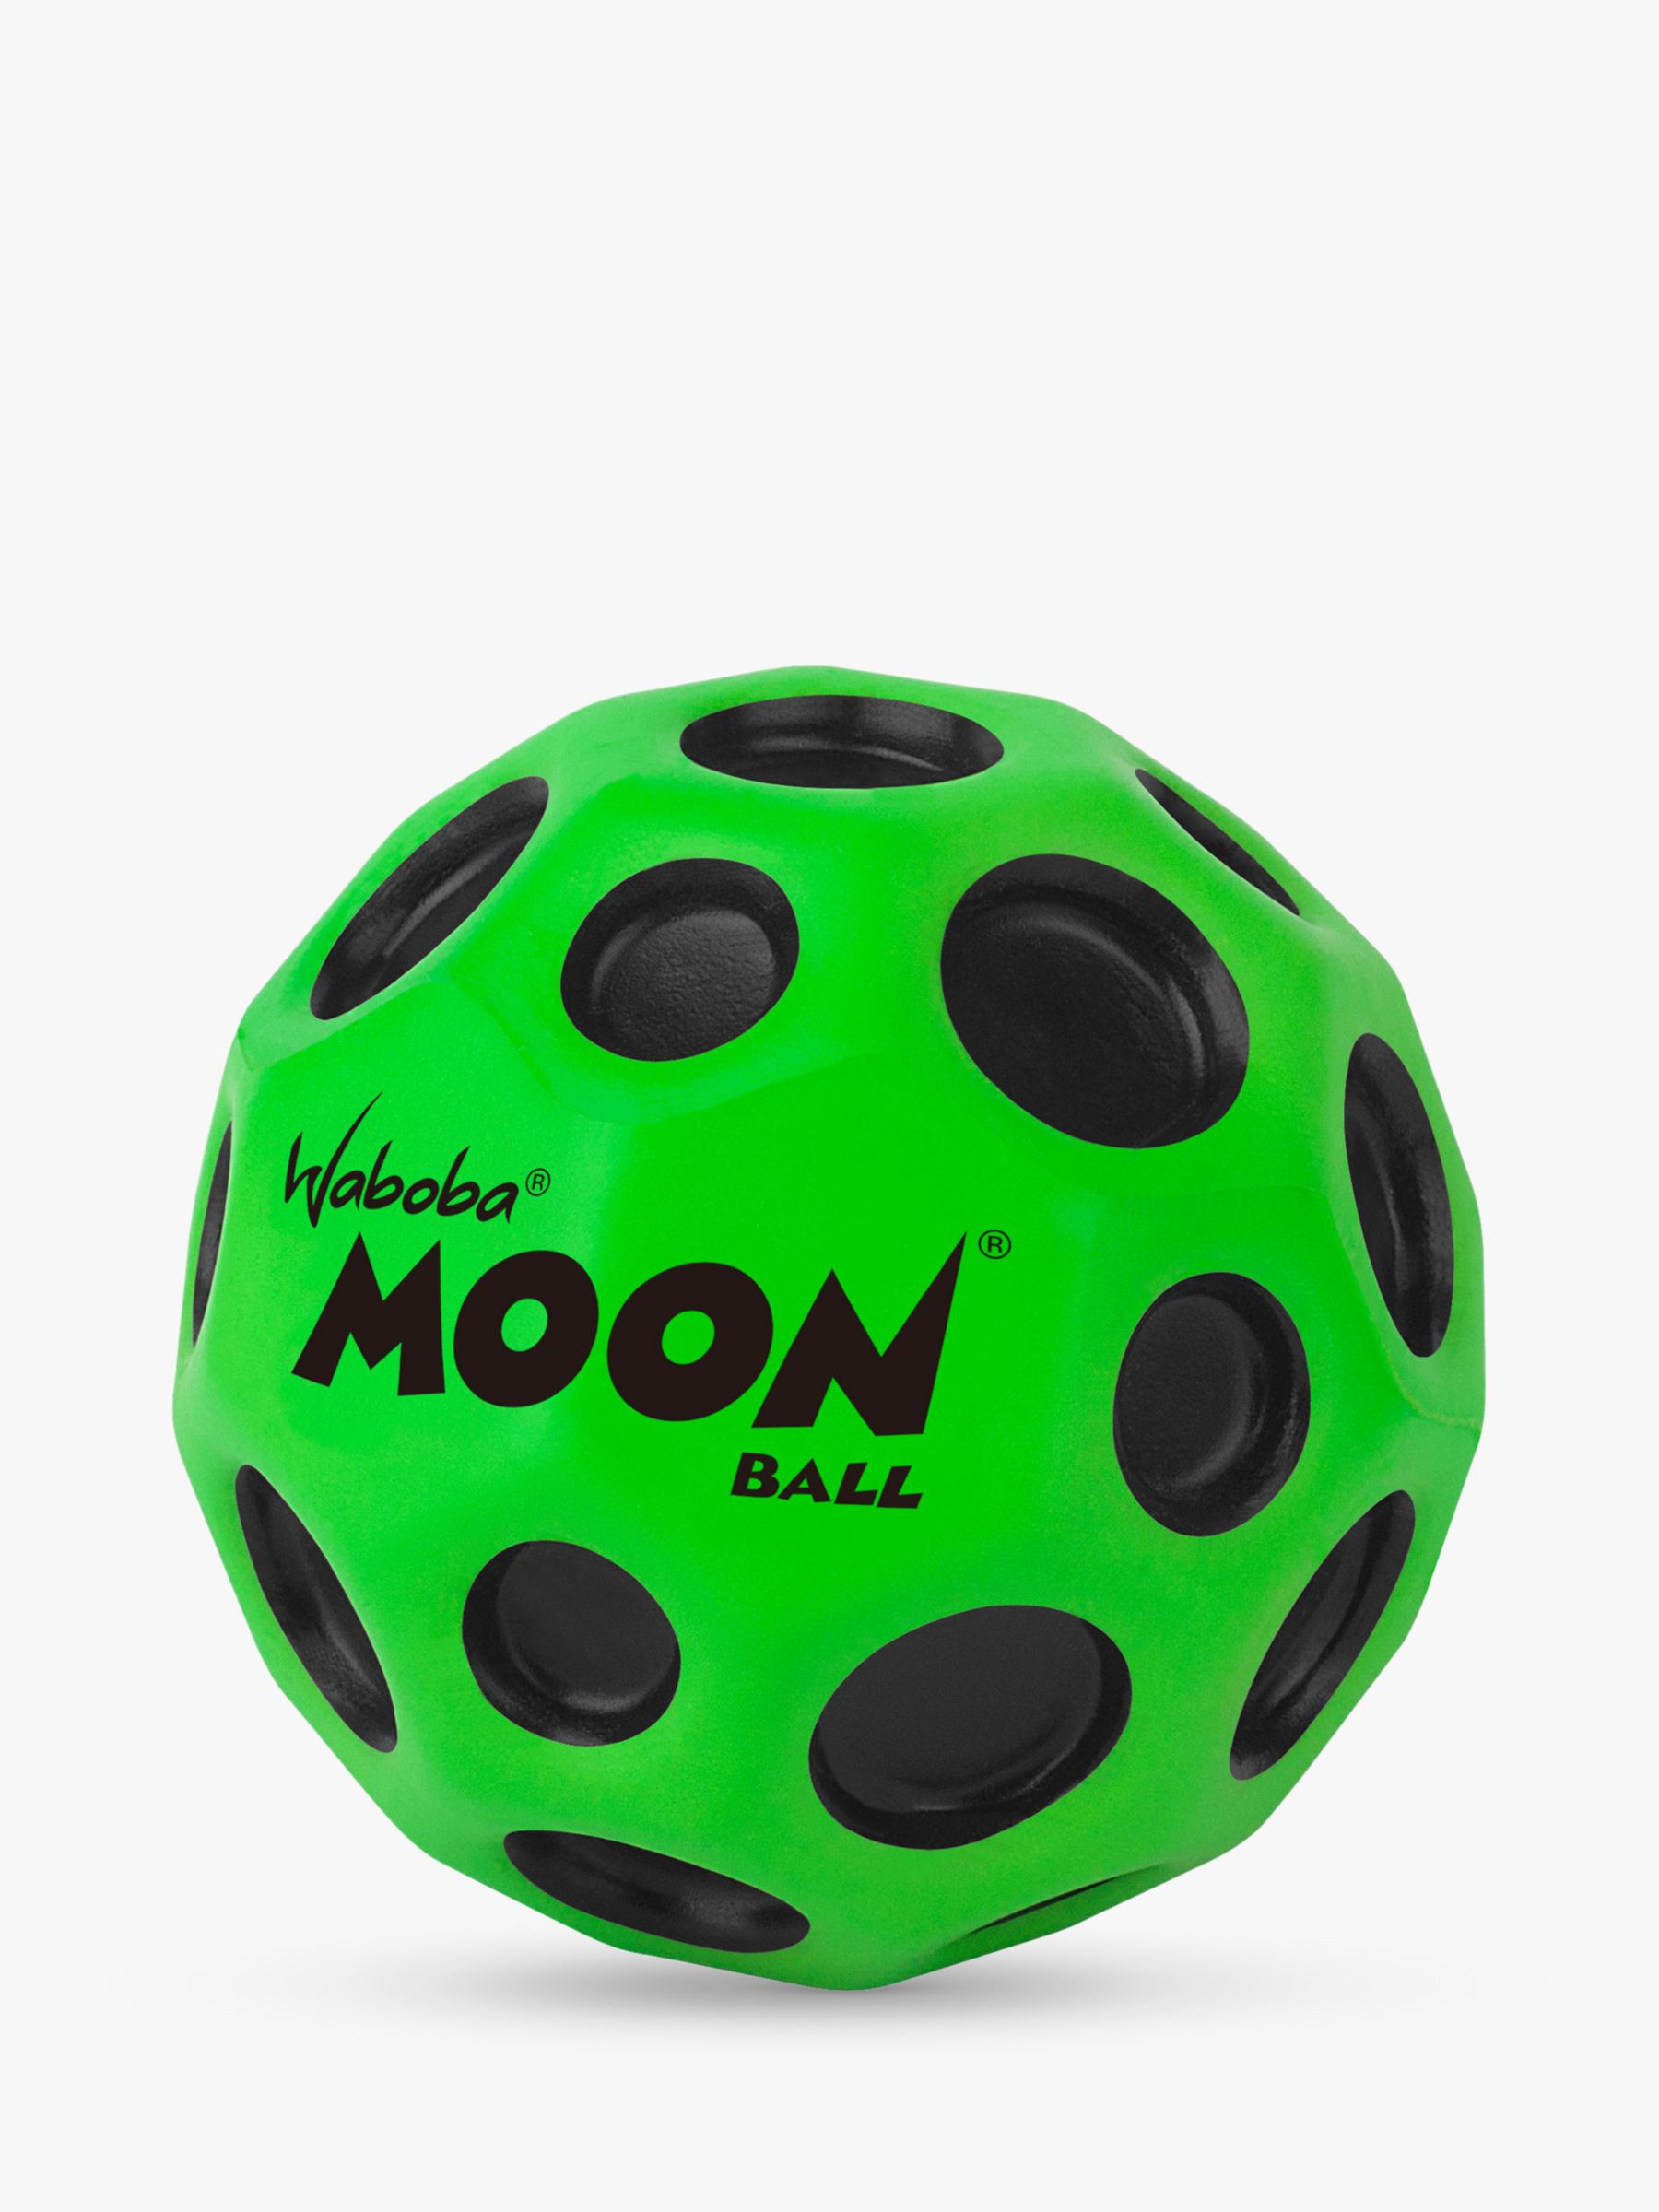 Waboba Moon Bouncy Ball Kids Toy Fun Bounce  Free UK P&P 